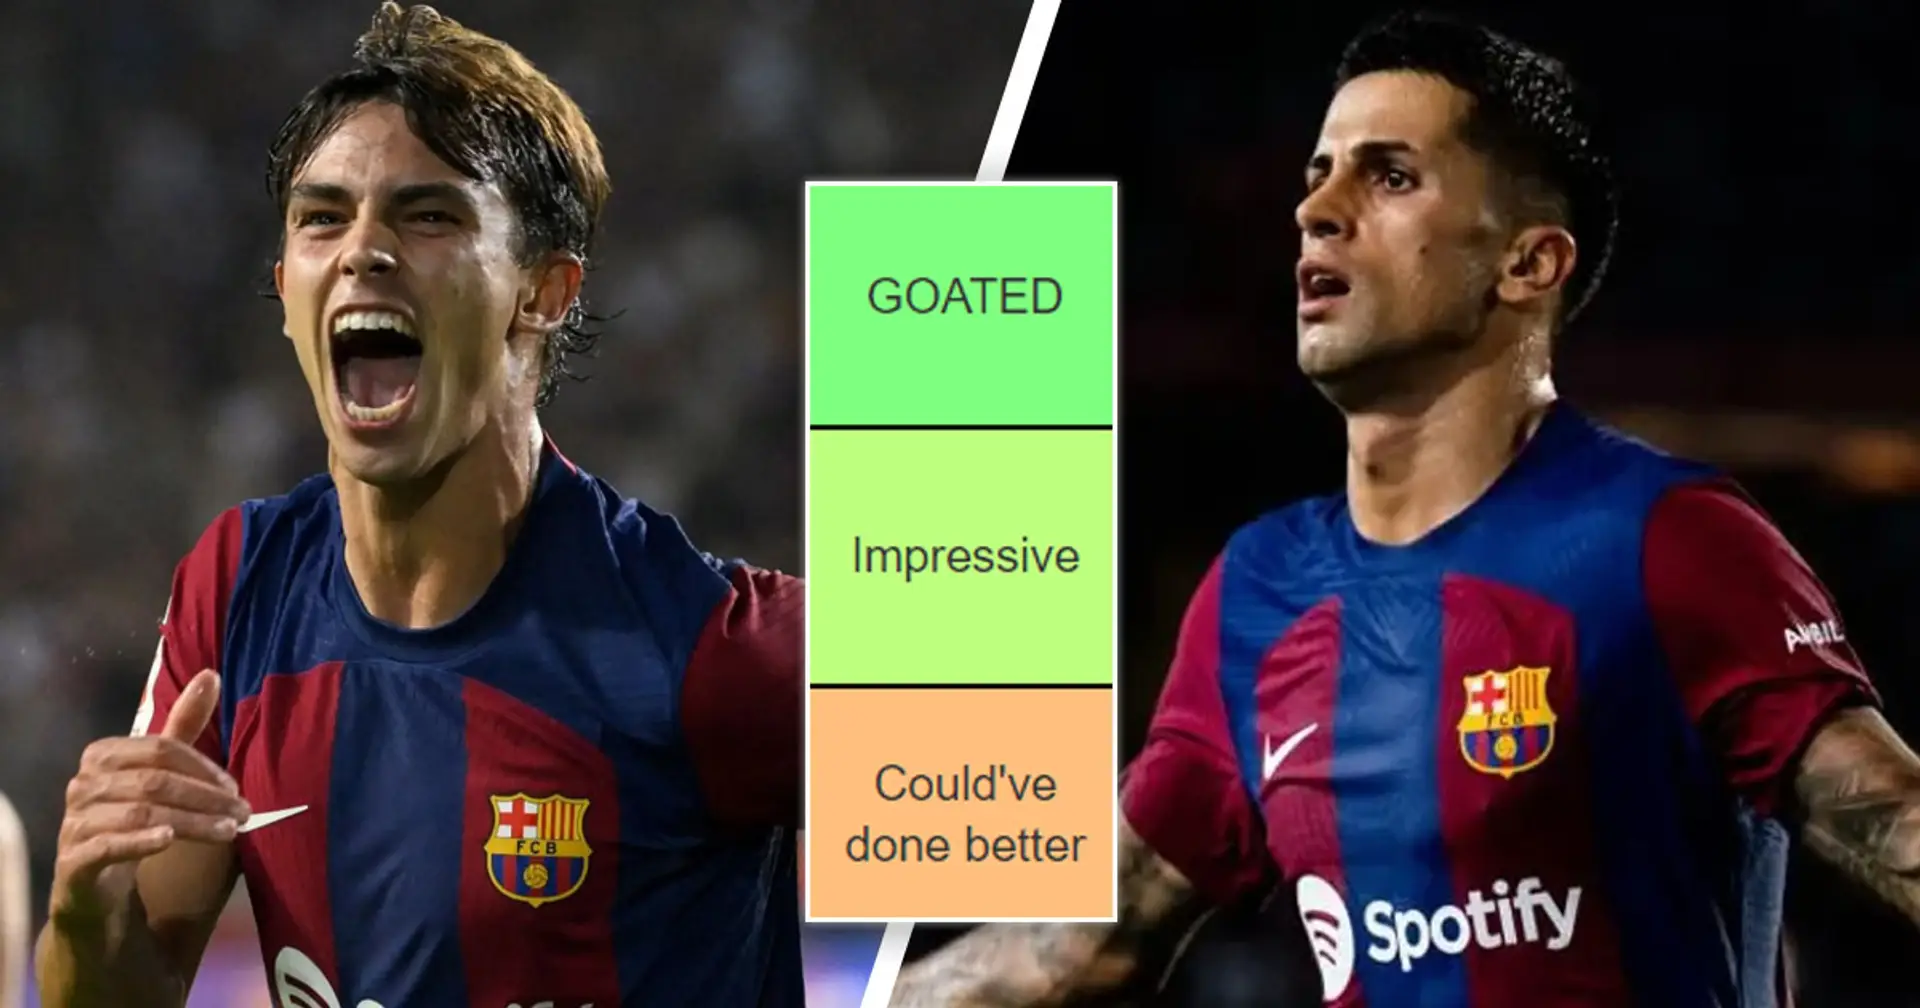 4 GOATS, 1 podría haberlo jugado mejor: tierlist de rendimiento de los jugadores del Barcelona en la goleada vs Real Betis